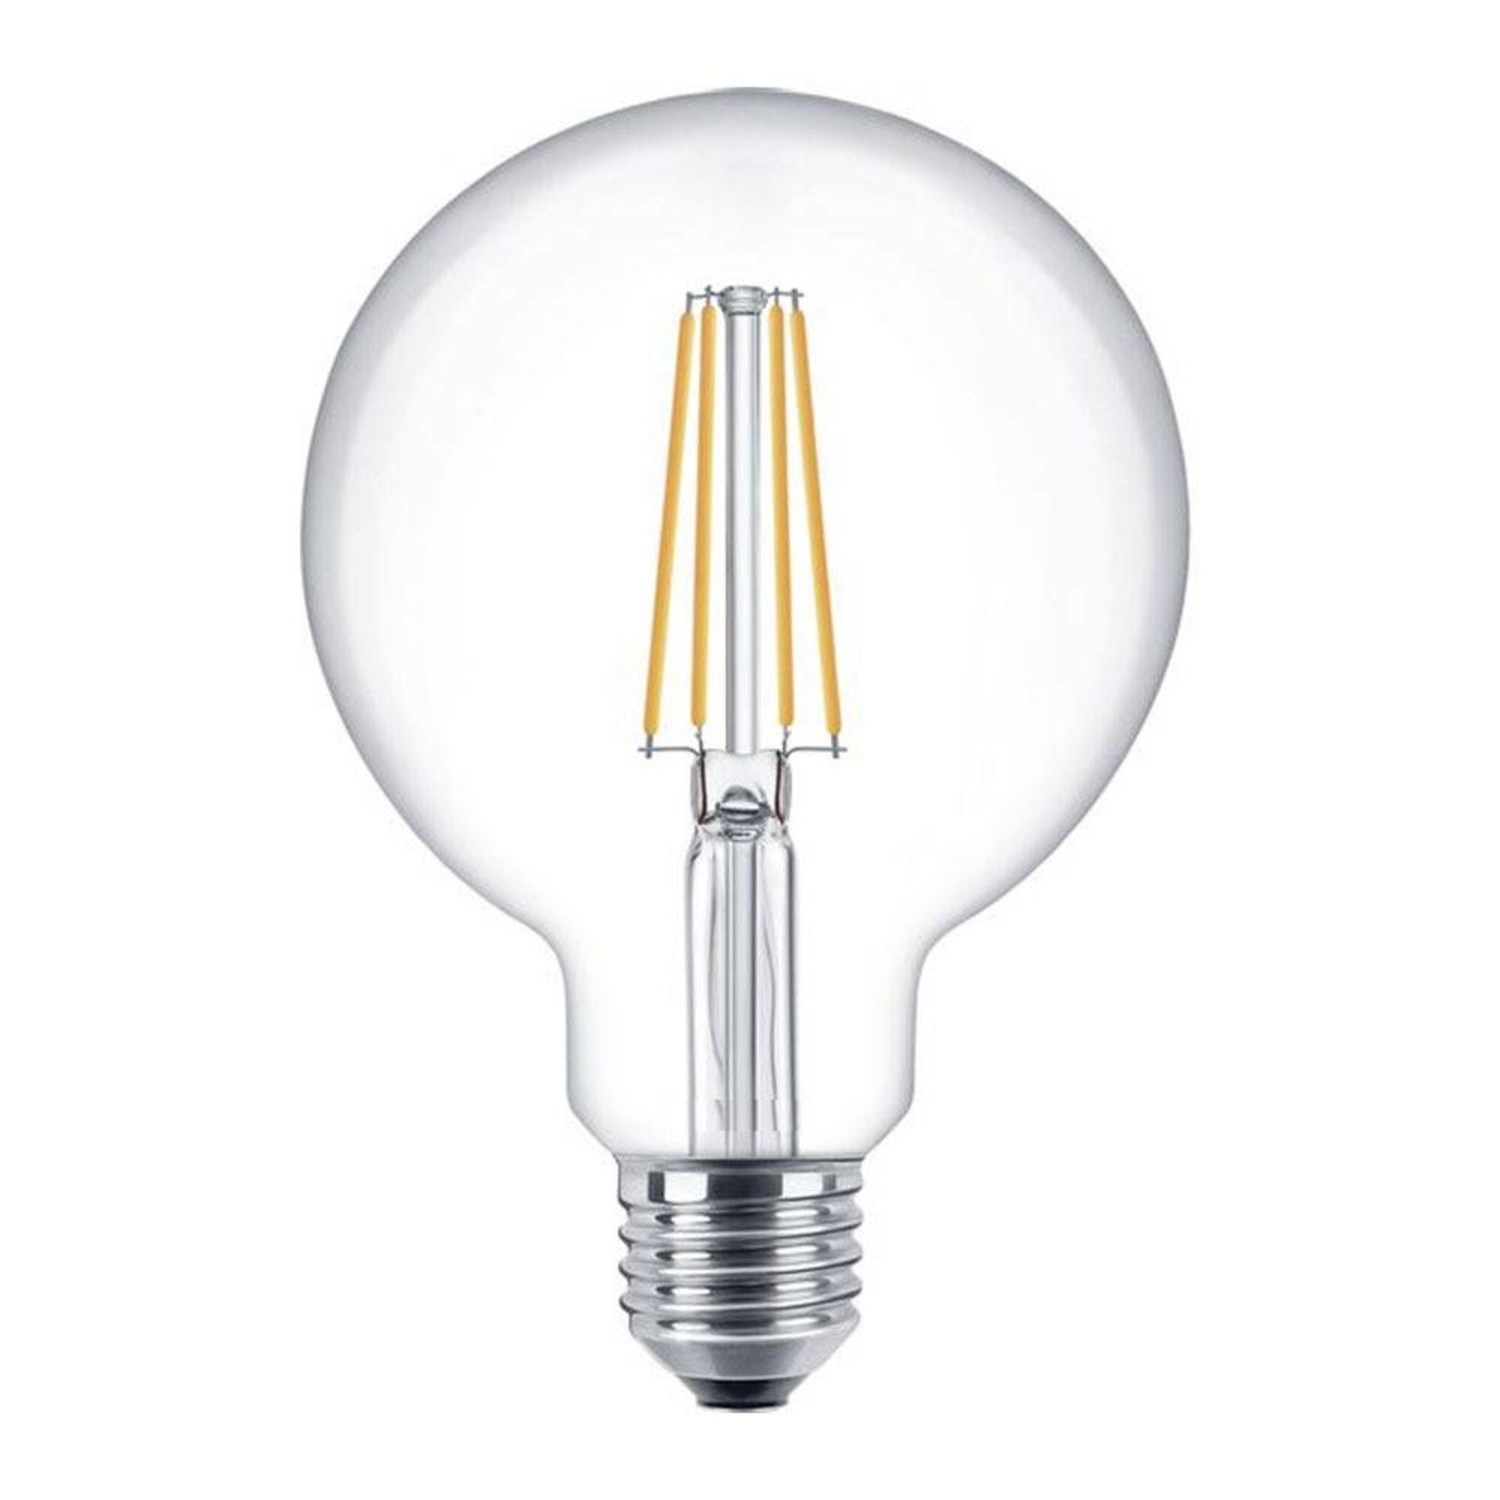 Sterkte Treble repertoire LED Filament lamp dimbaar - XL GLOBE - E27 fitting - 4W - 2700K -  Ledlichtdiscounter.nl